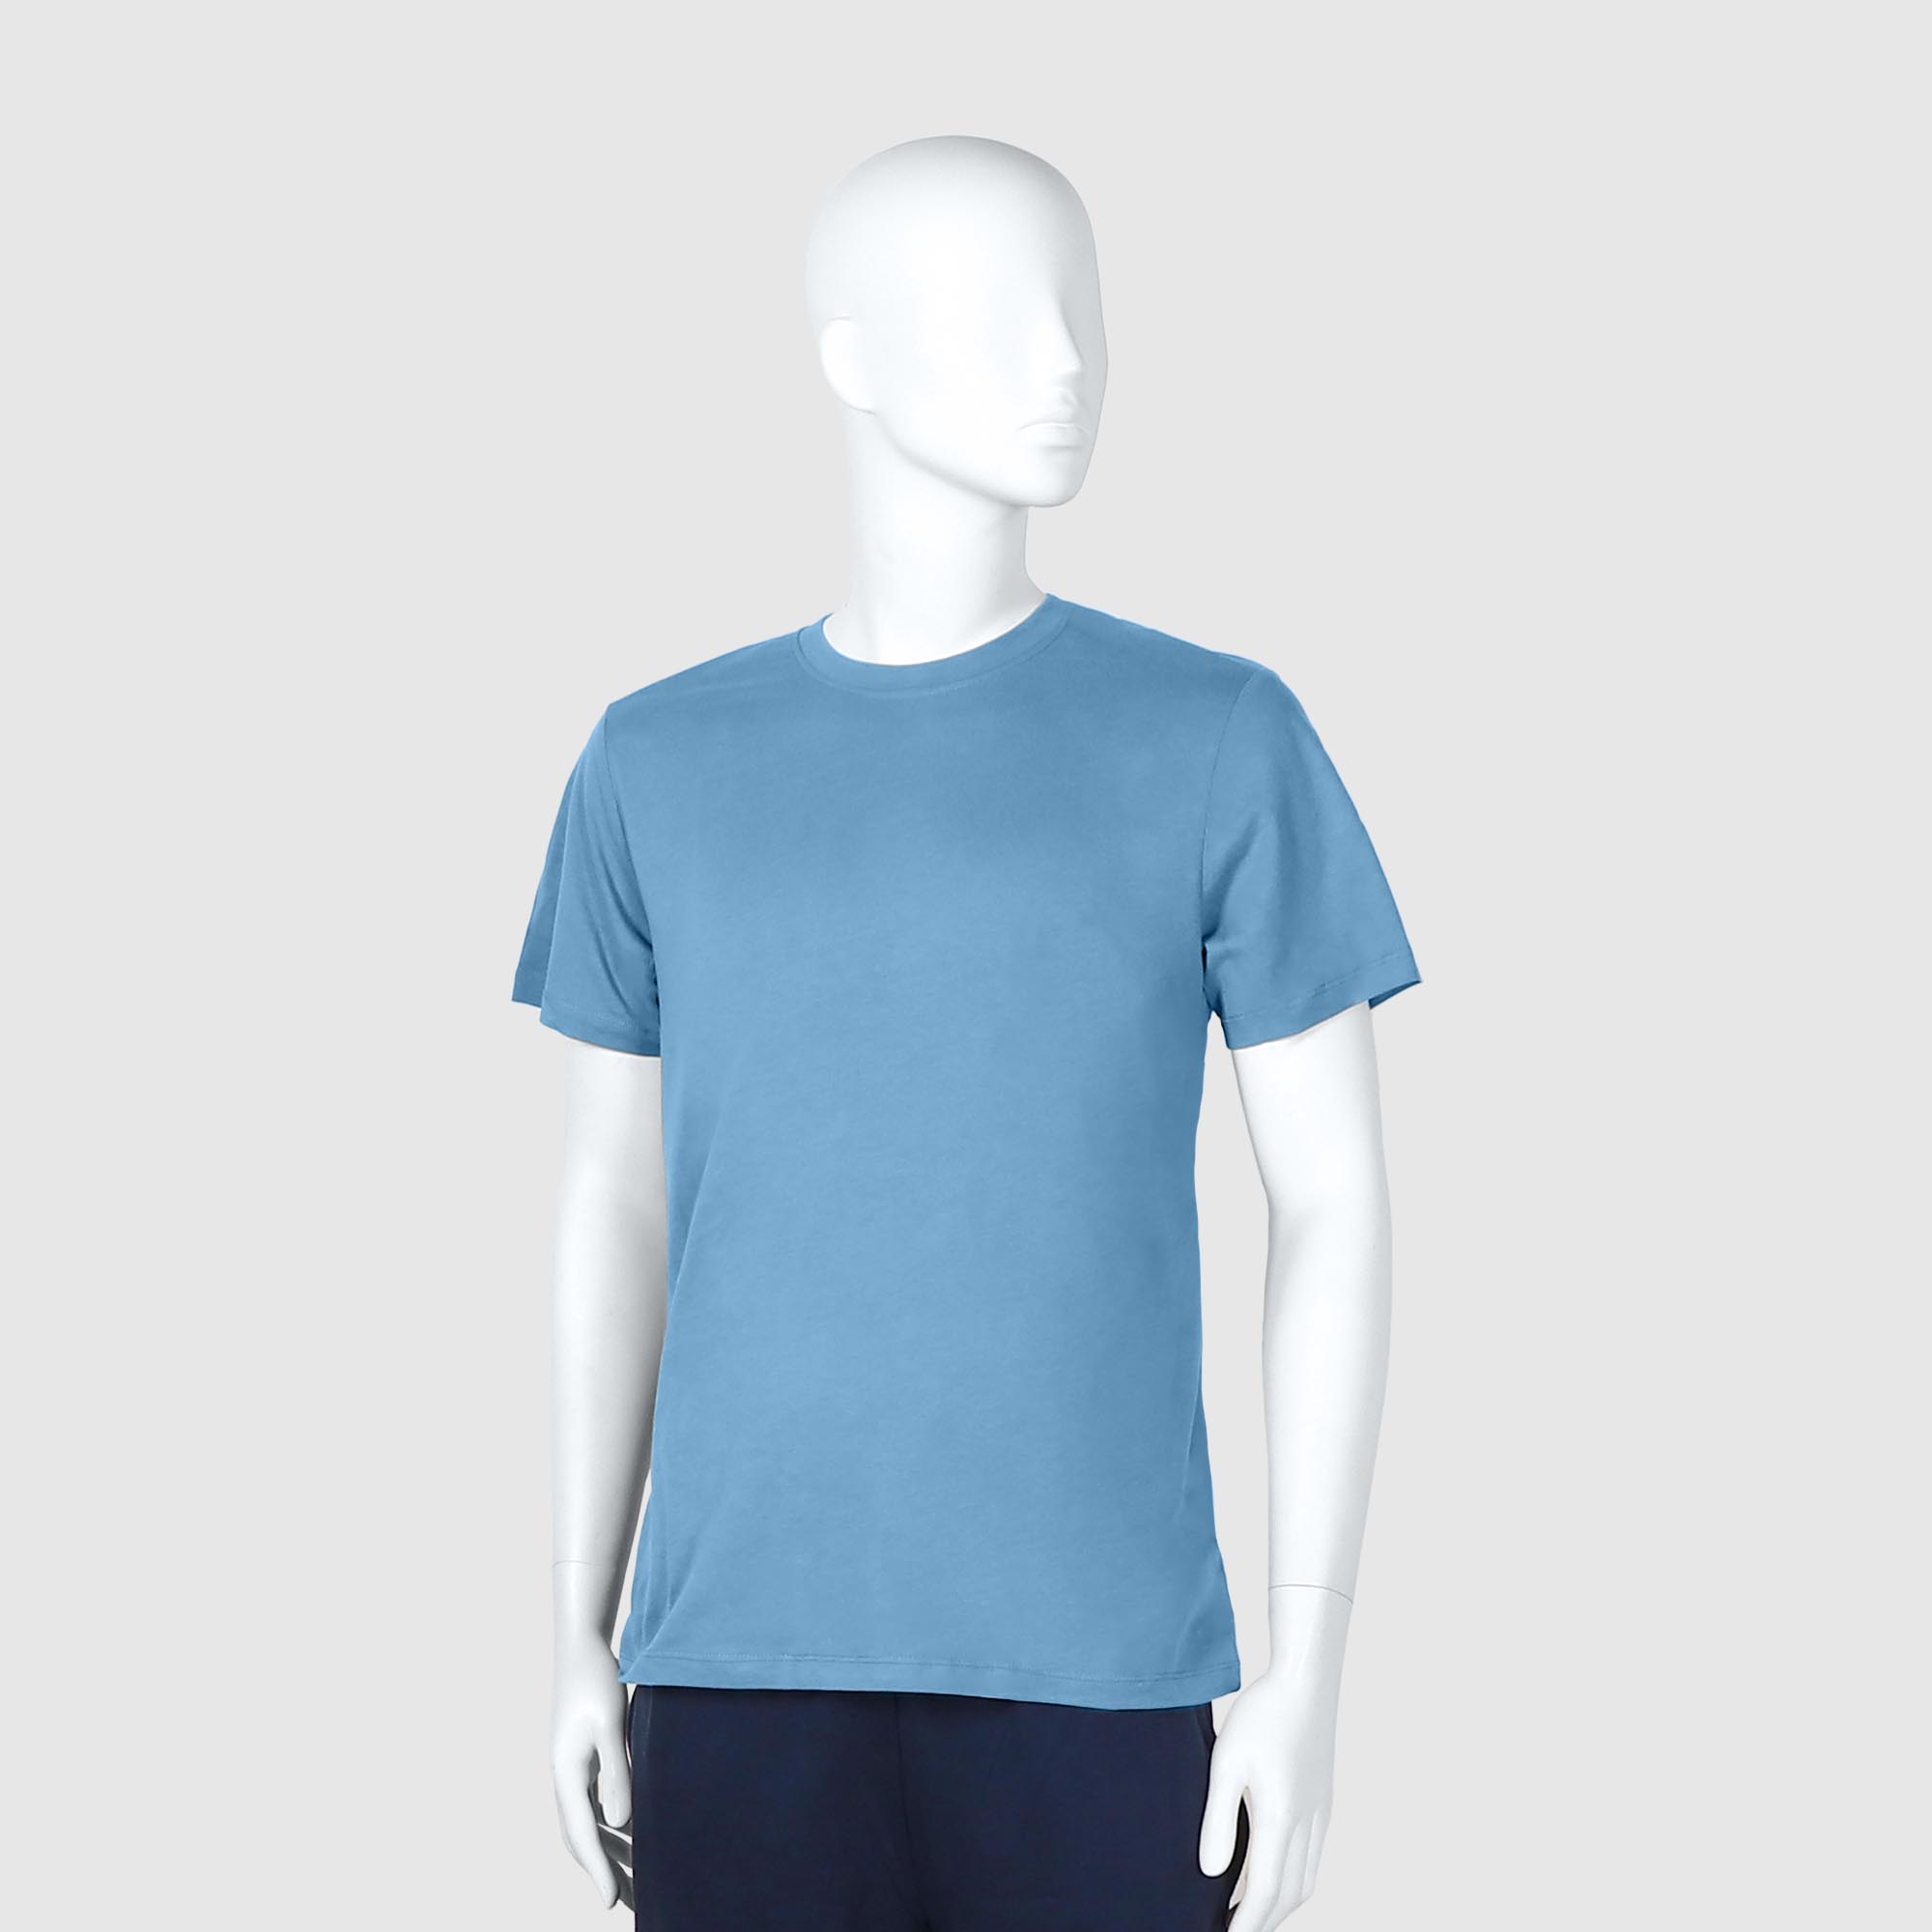 Мужская футболка Diva Teks голубая (DTD-03), цвет голубой, размер 54-56